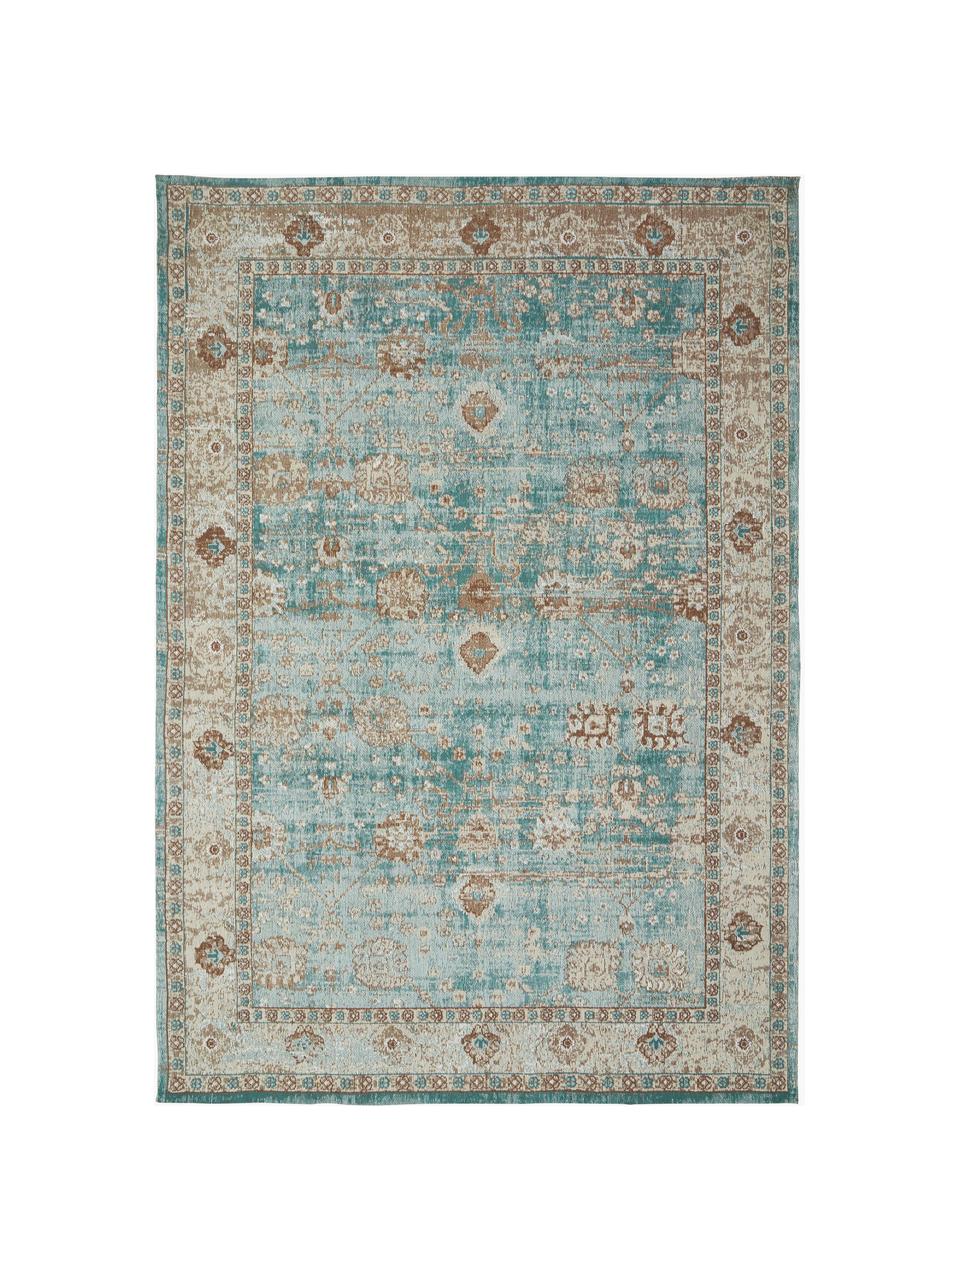 Ručně tkaný žinylkový koberec Rimini, Tyrkysová zelená, béžová, hnědá, Š 160 cm, D 230 cm (velikost M)